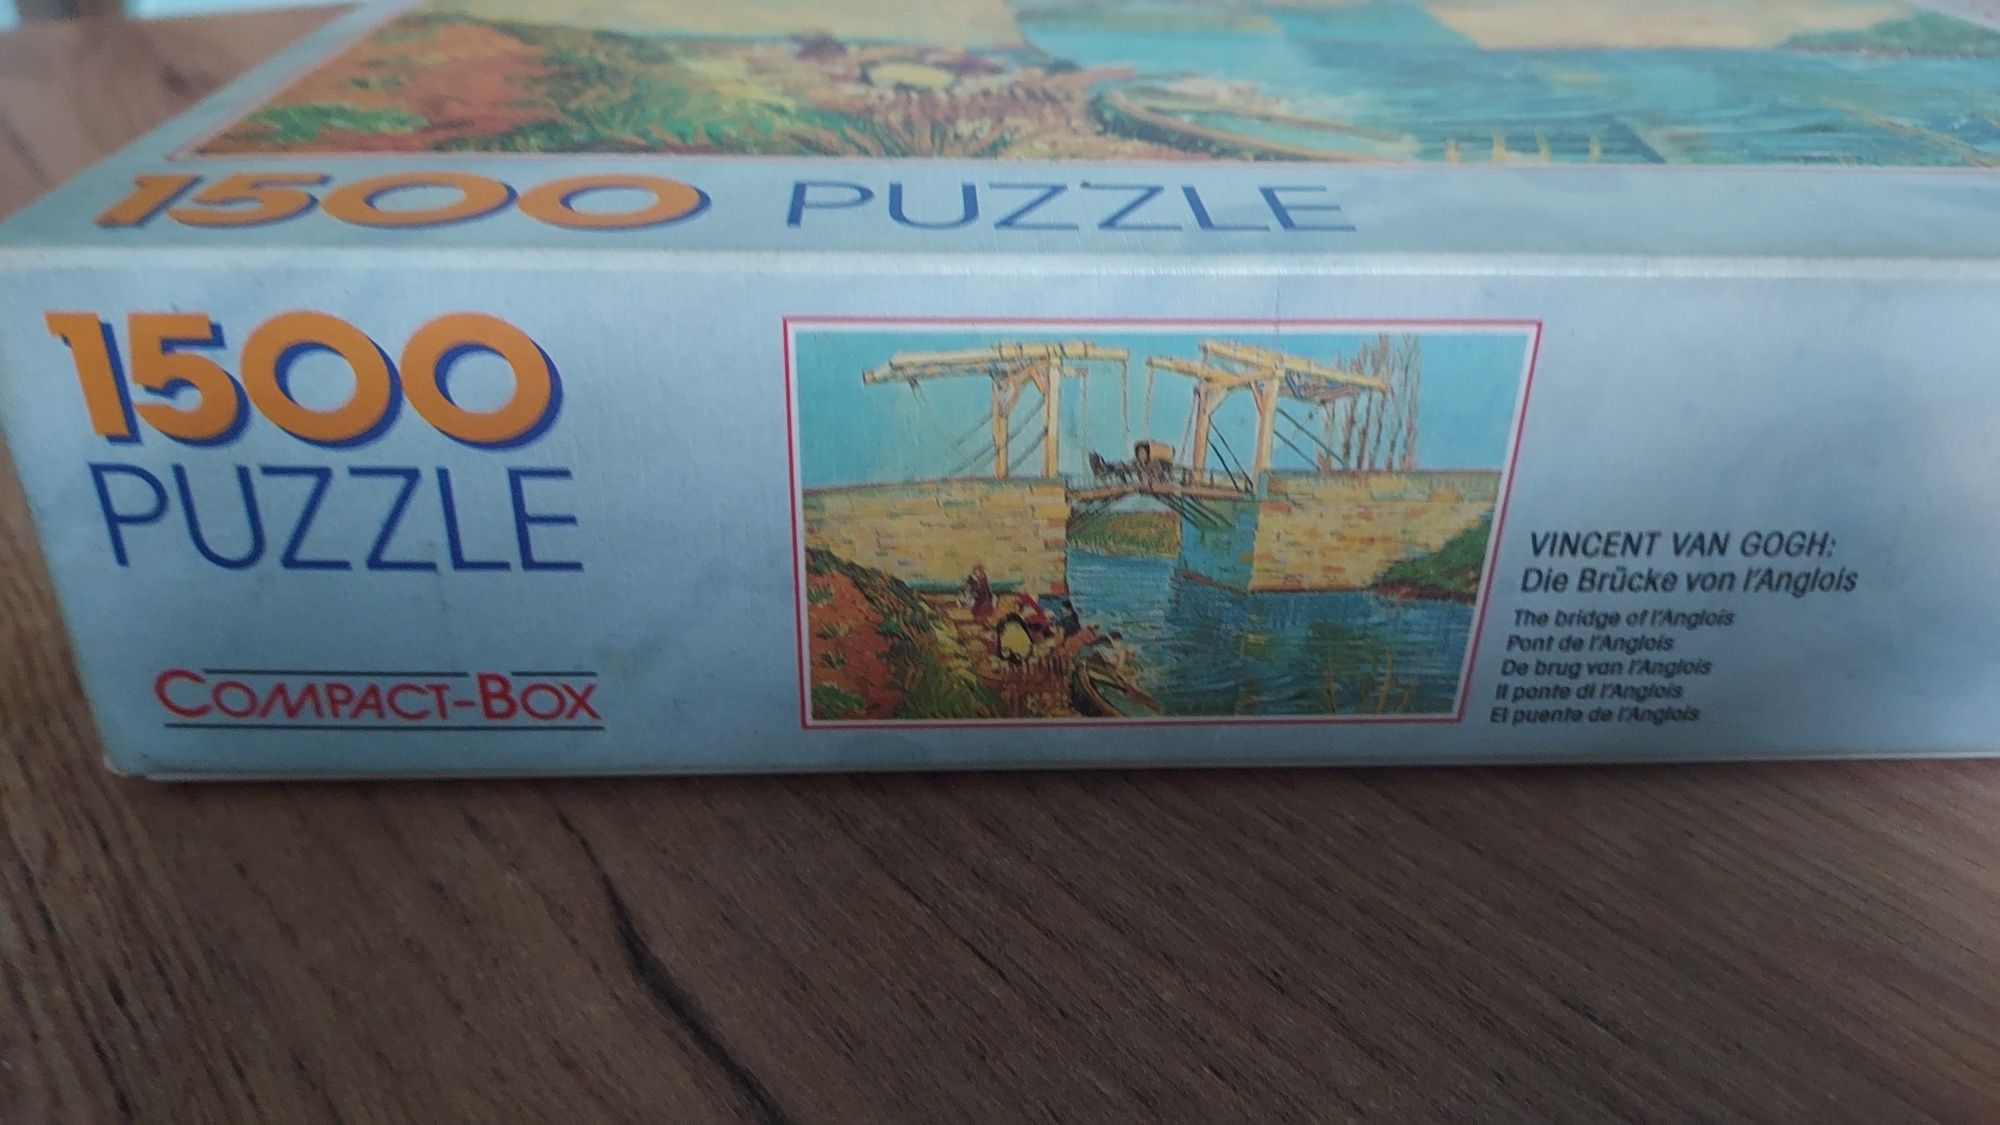 Puzzle Schmid 1500el. Van Gogh the bridge os l'Anglois